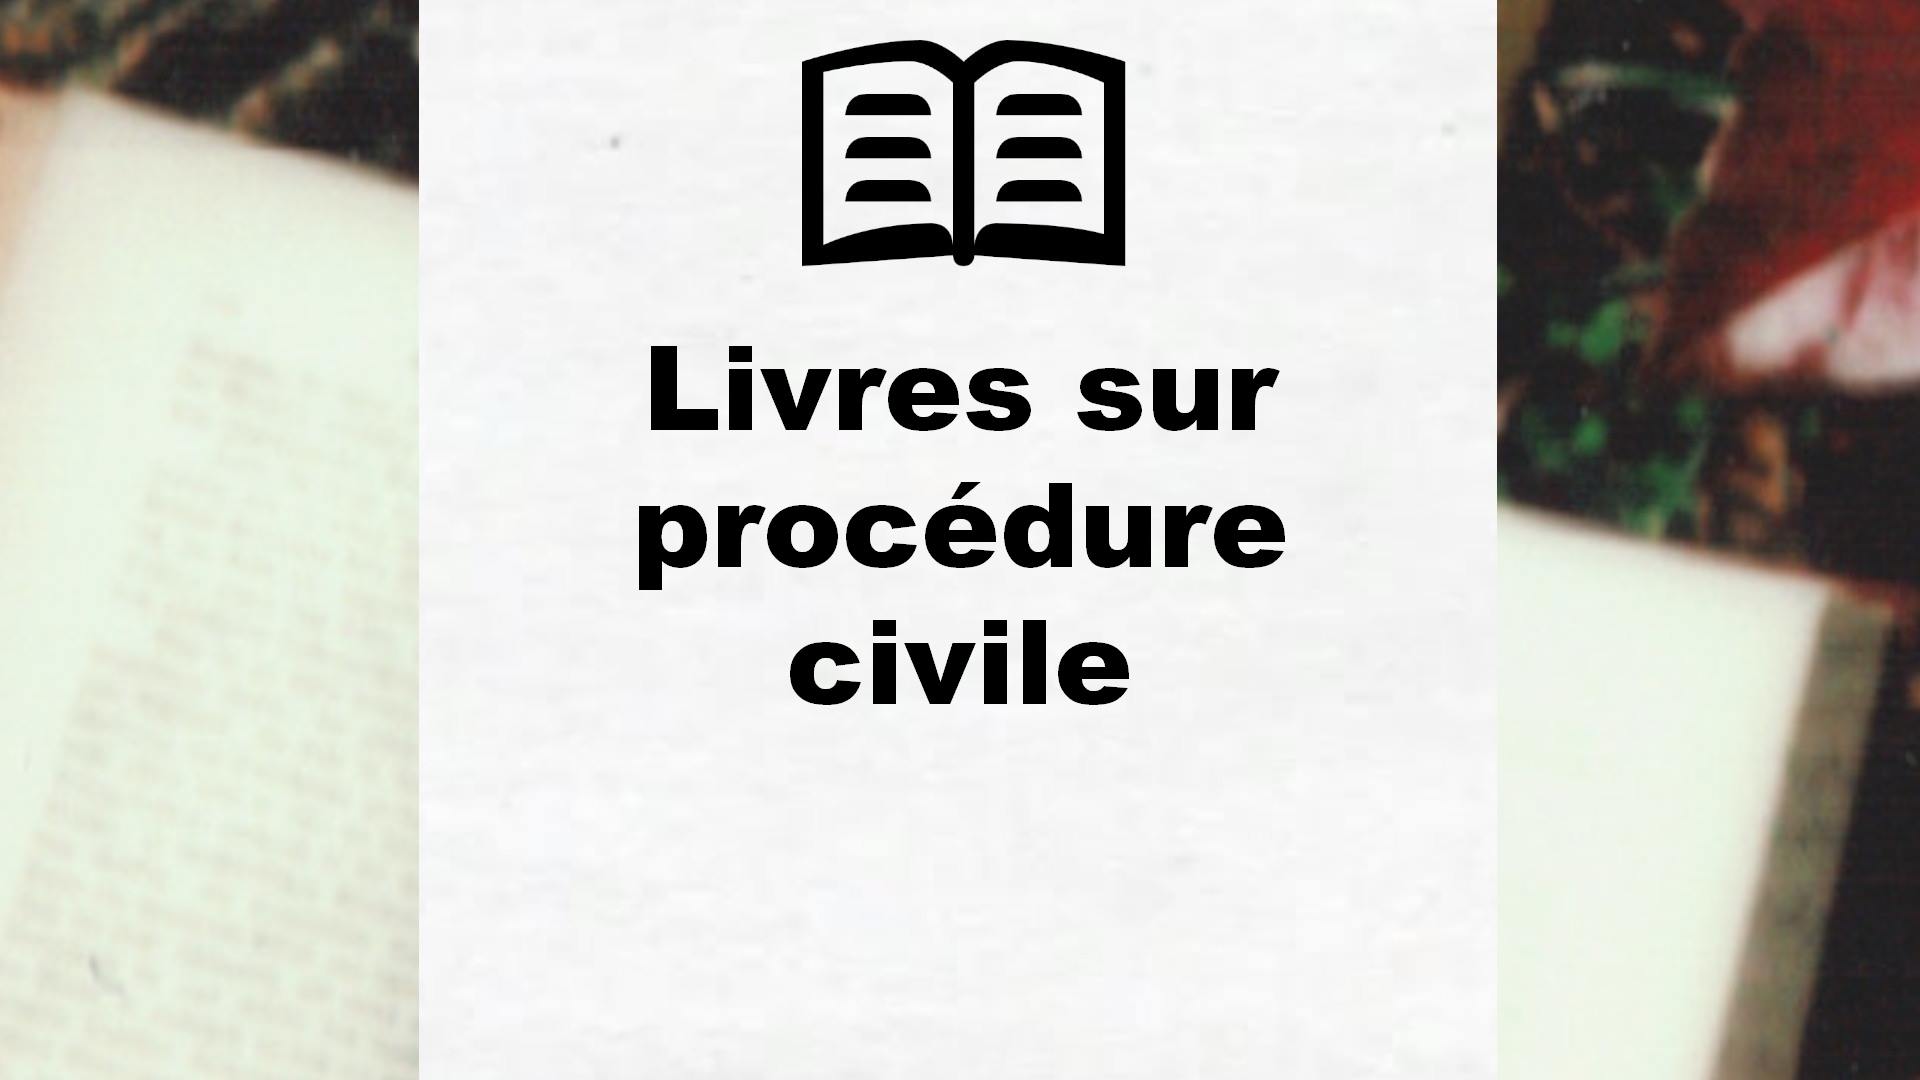 Livres sur procédure civile